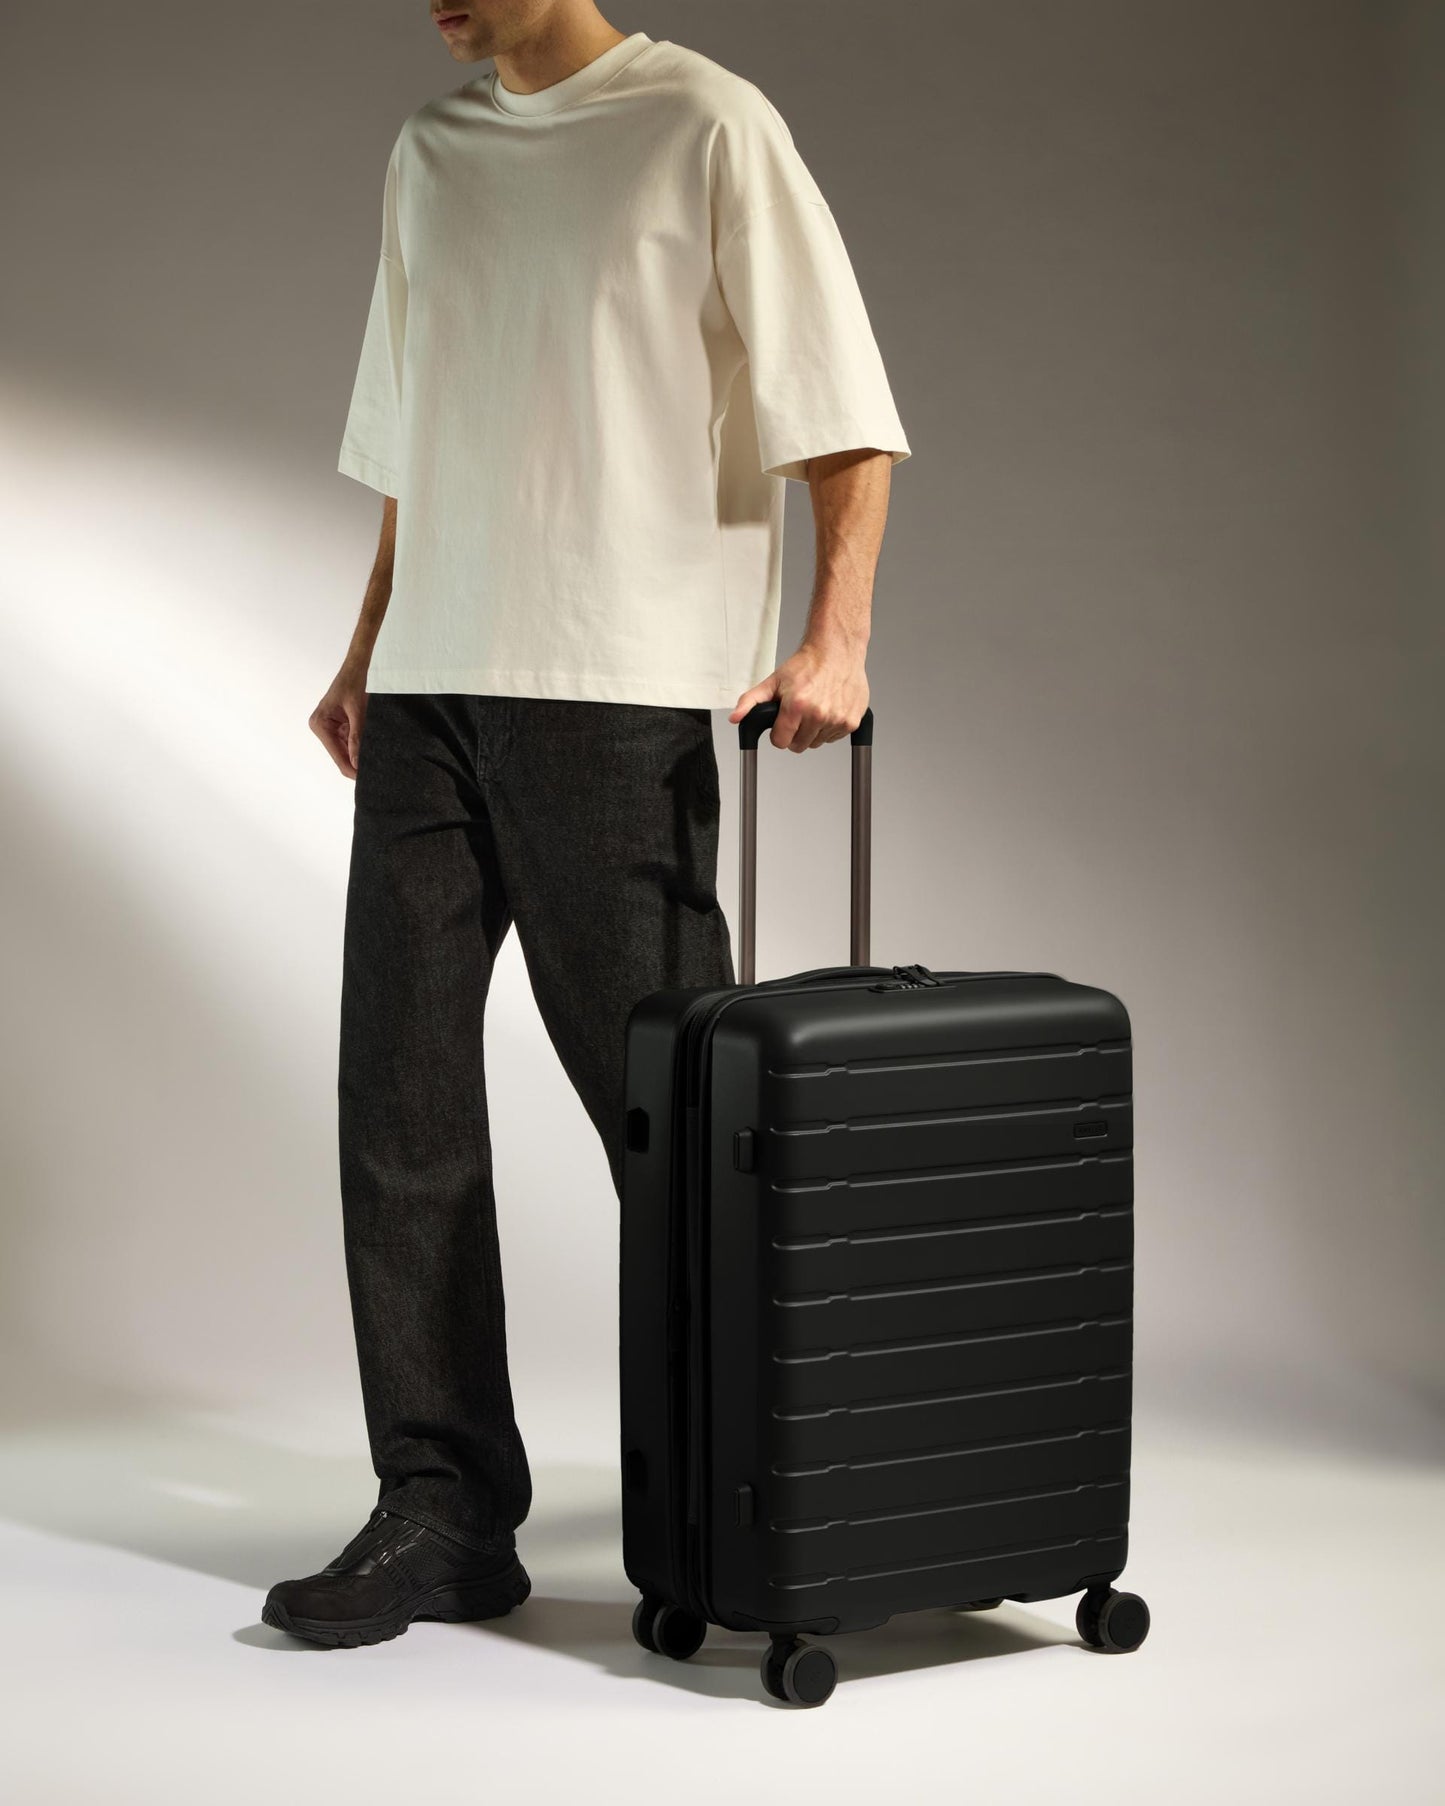 Antler Luggage -  Stamford 2.0 medium in midnight black - Hard Suitcases Stamford 2.0 Medium Suitcase Black | Hard Luggage | Antler UK